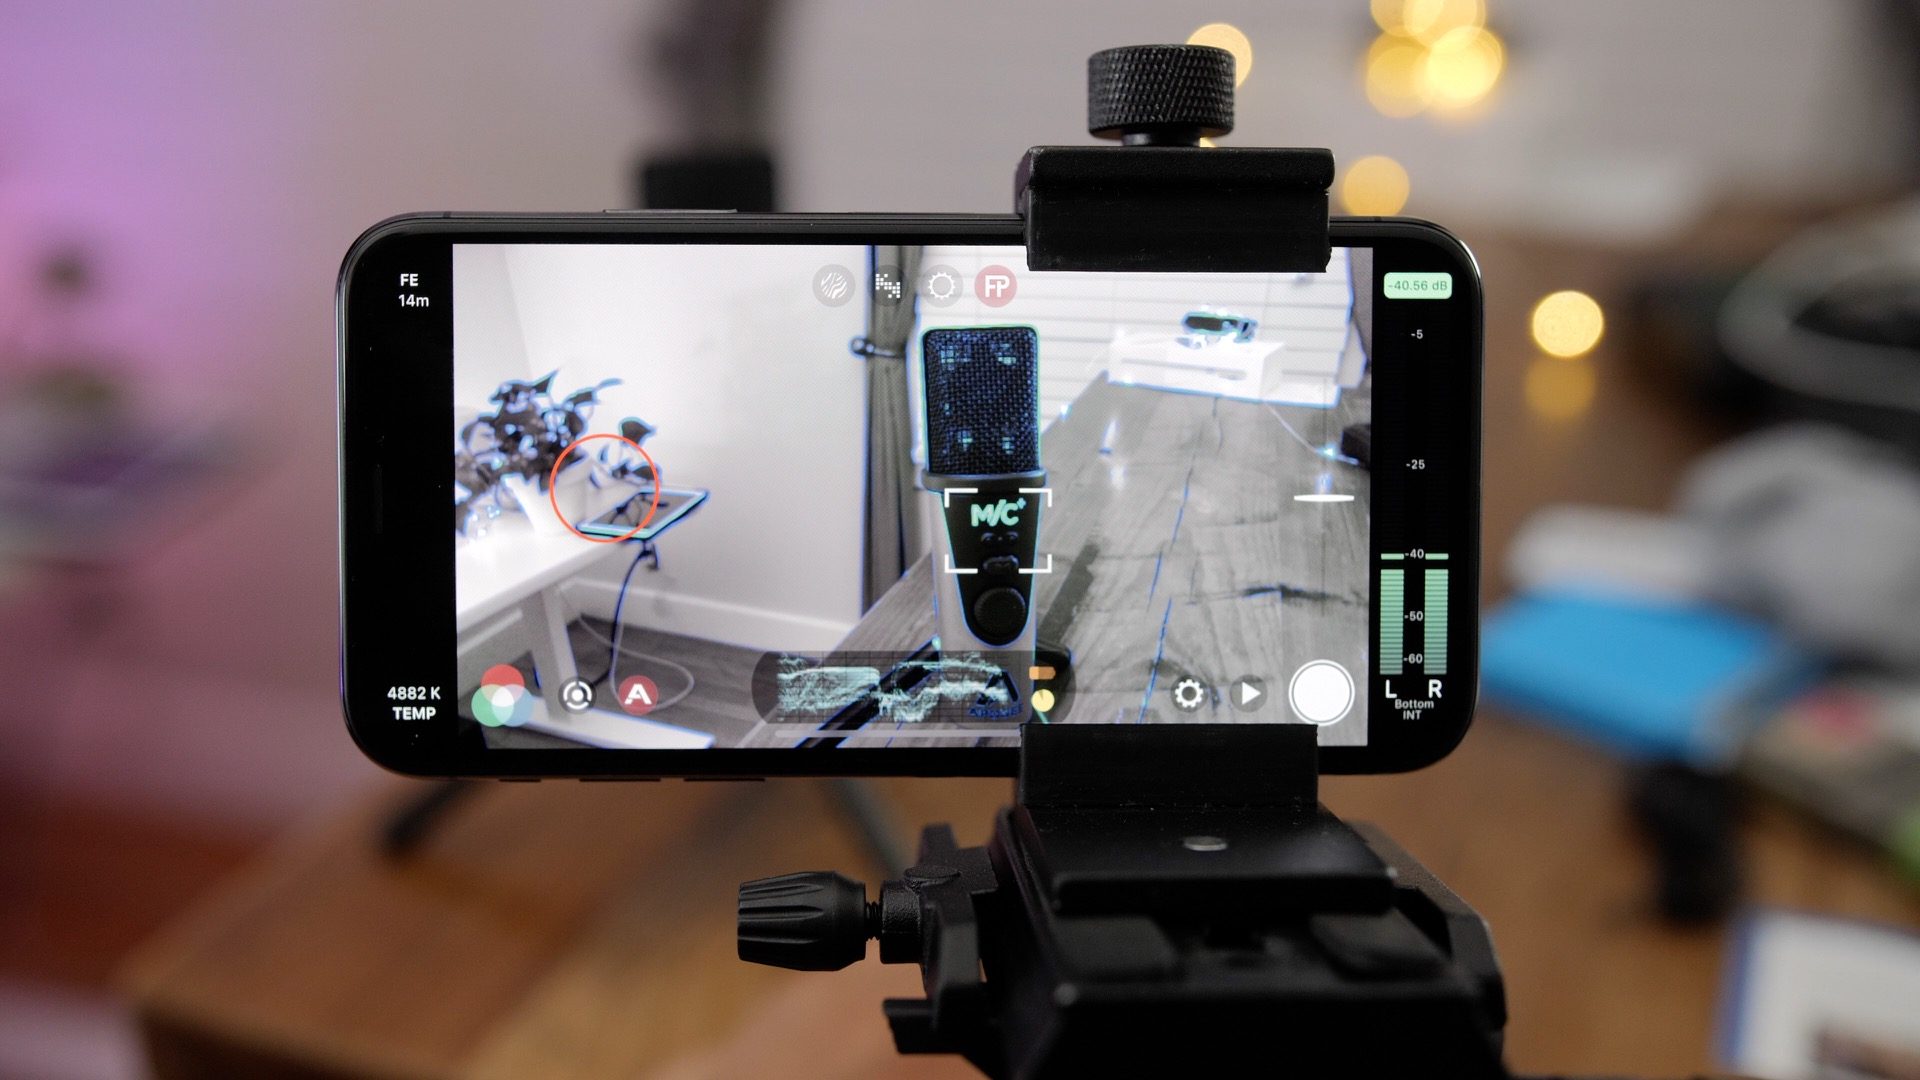 Filmic Pro - Ứng dụng quay video phải có cho những thợ quay phim bằng iPhone